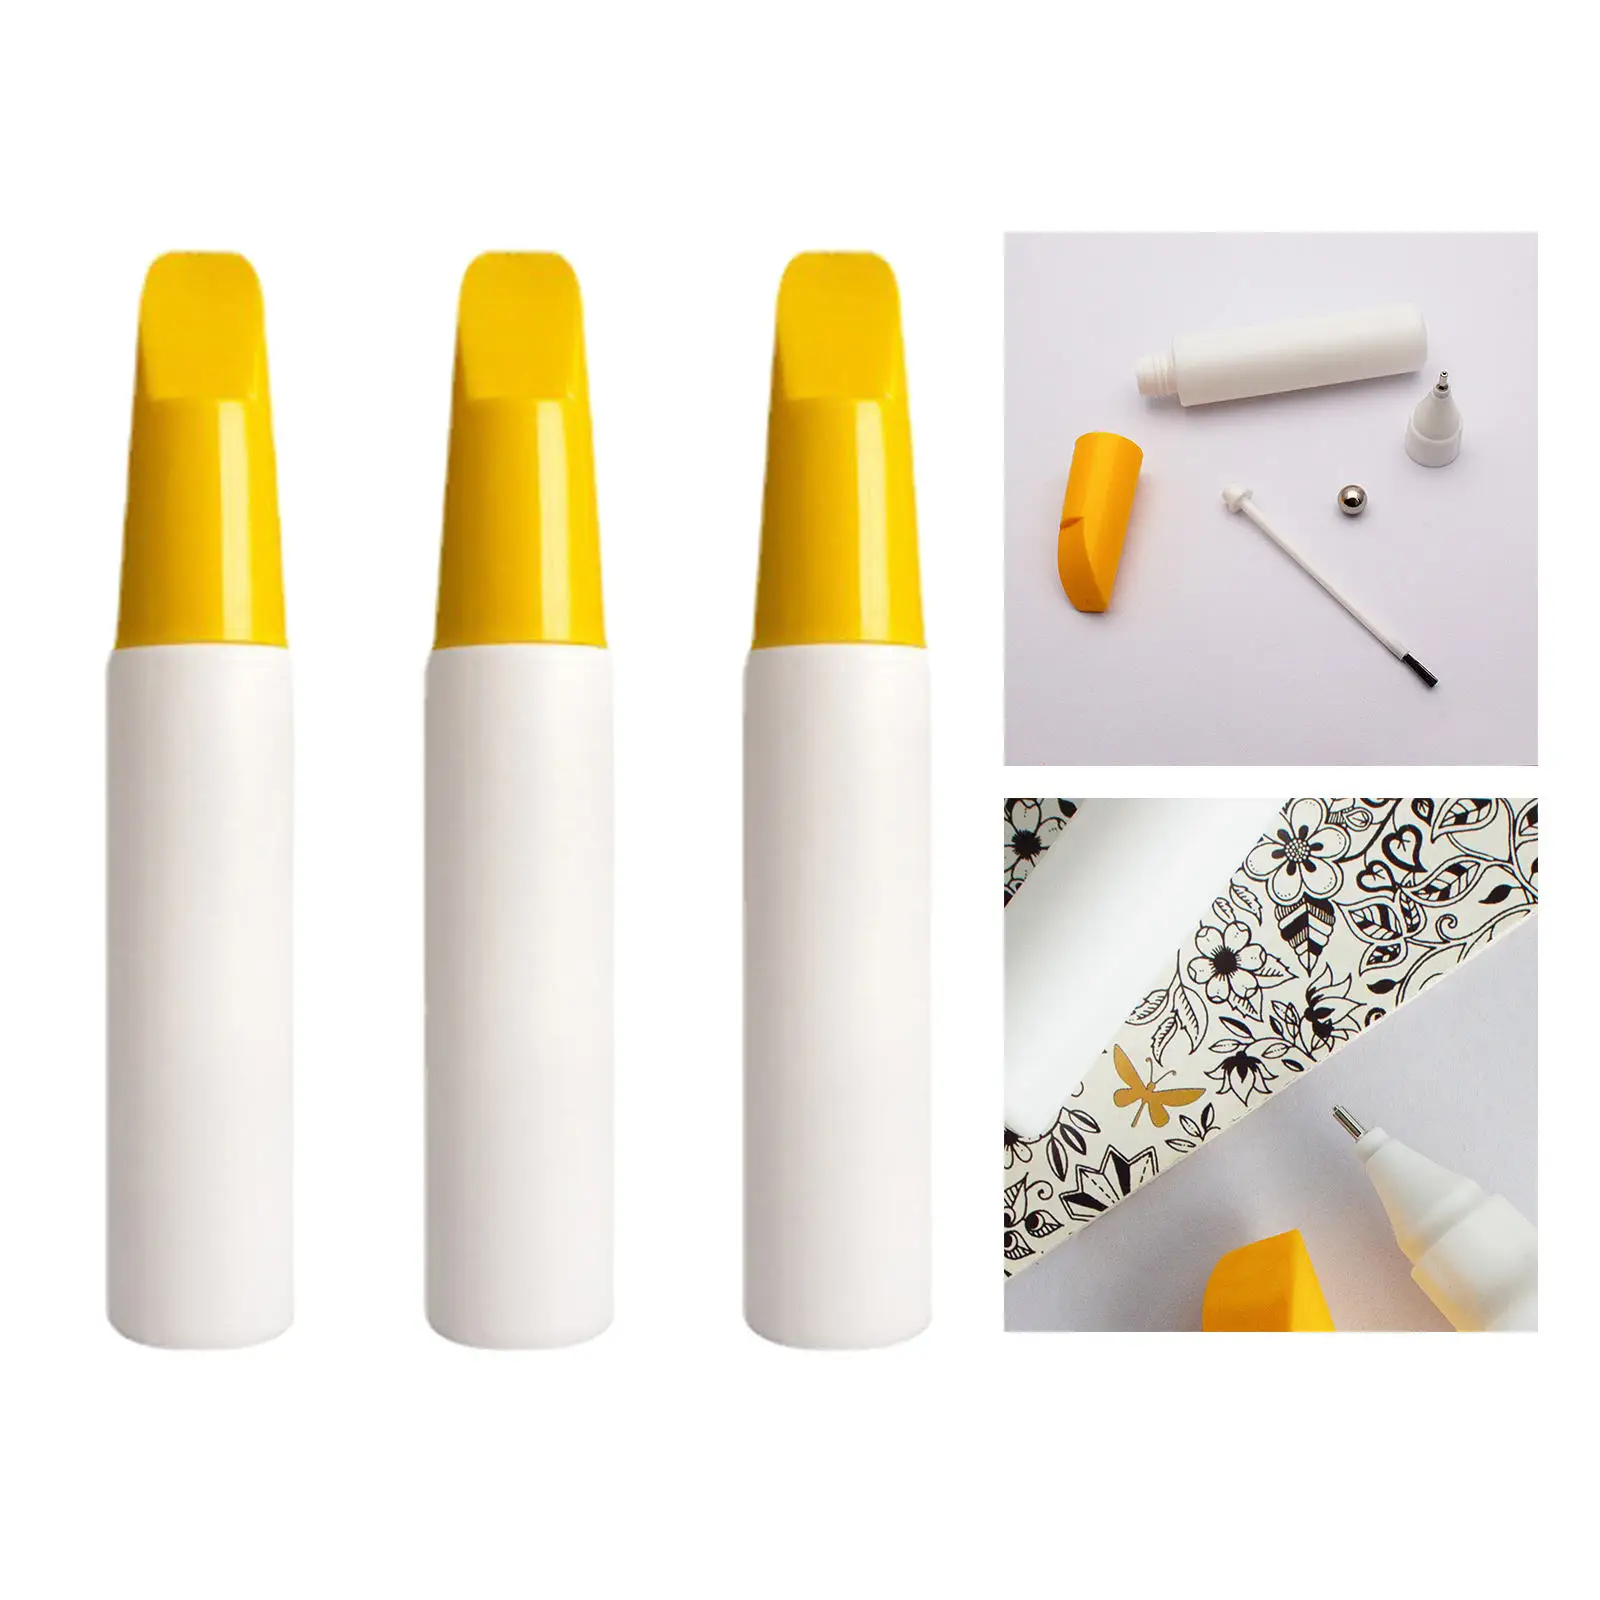 3 Pcs Portable Refillable Empty Bottle Car Scratch Remover Pen Marker Paint Accessories